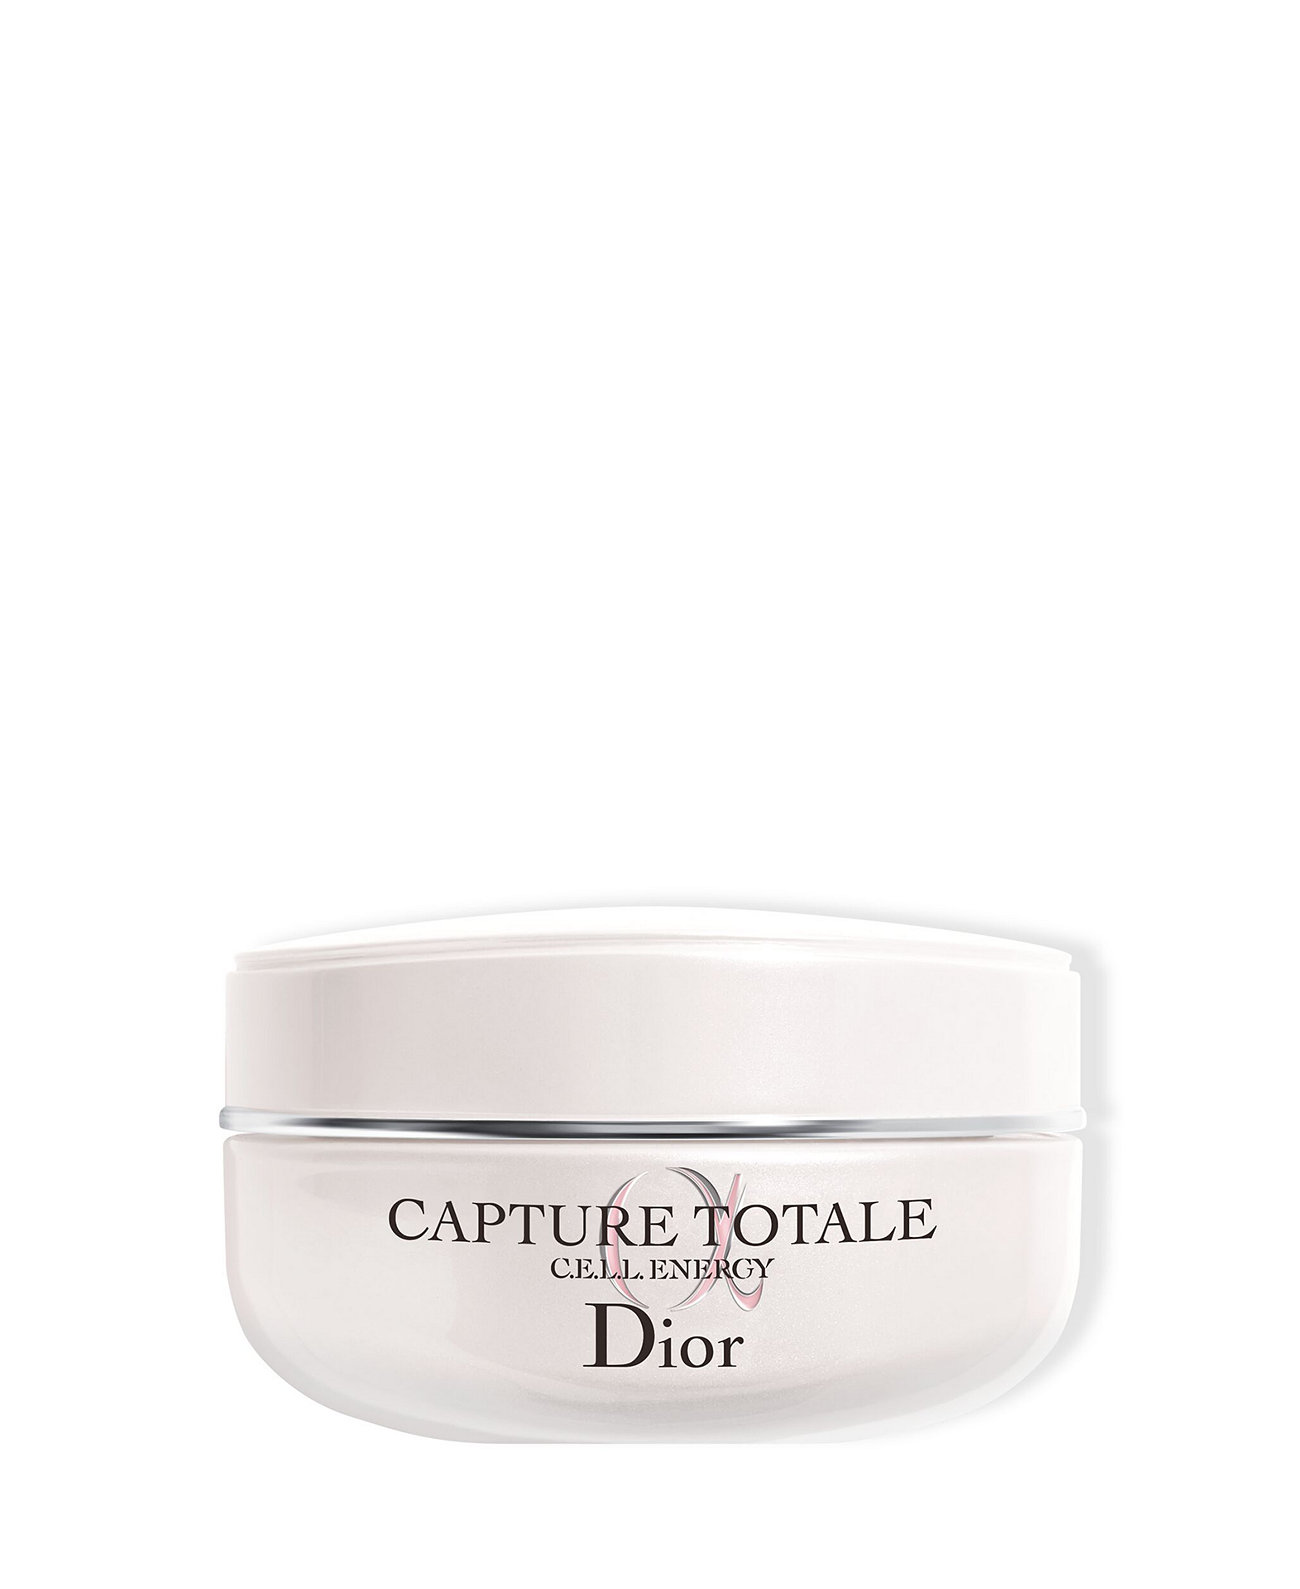 Крем Capture Totale укрепляющий и разглаживающий морщины, 1,7 унции. Dior